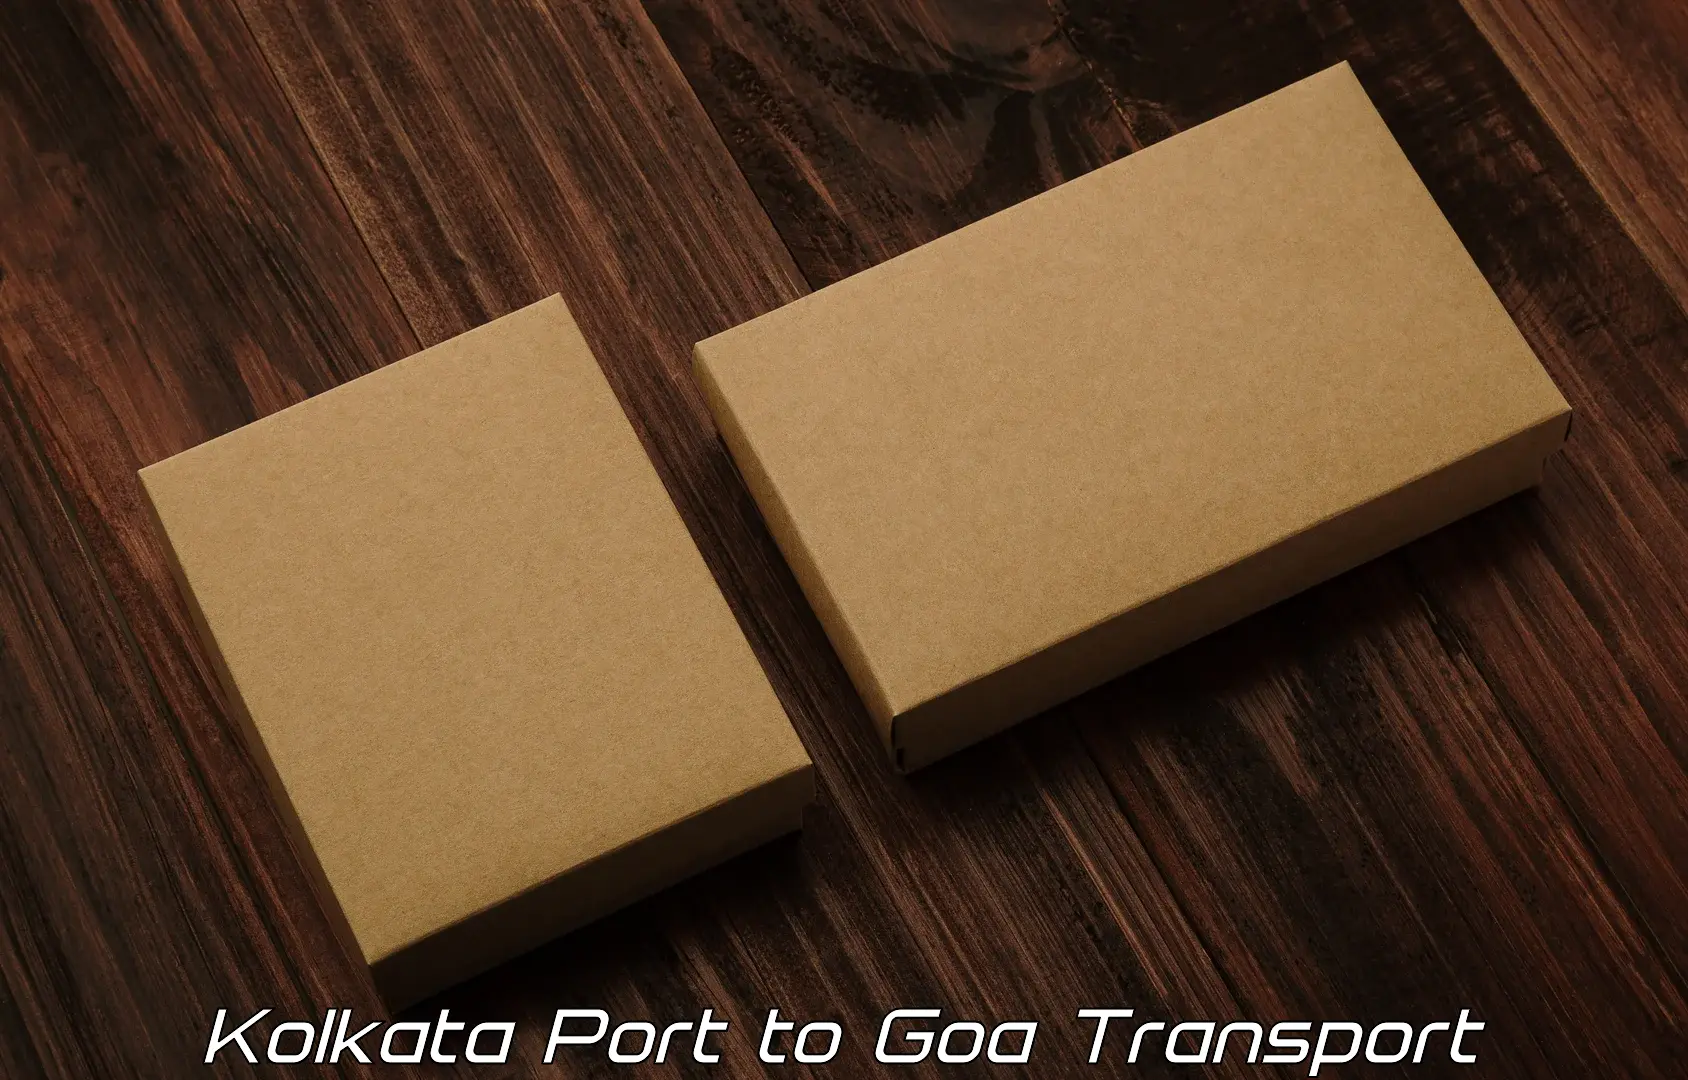 Vehicle parcel service Kolkata Port to Goa